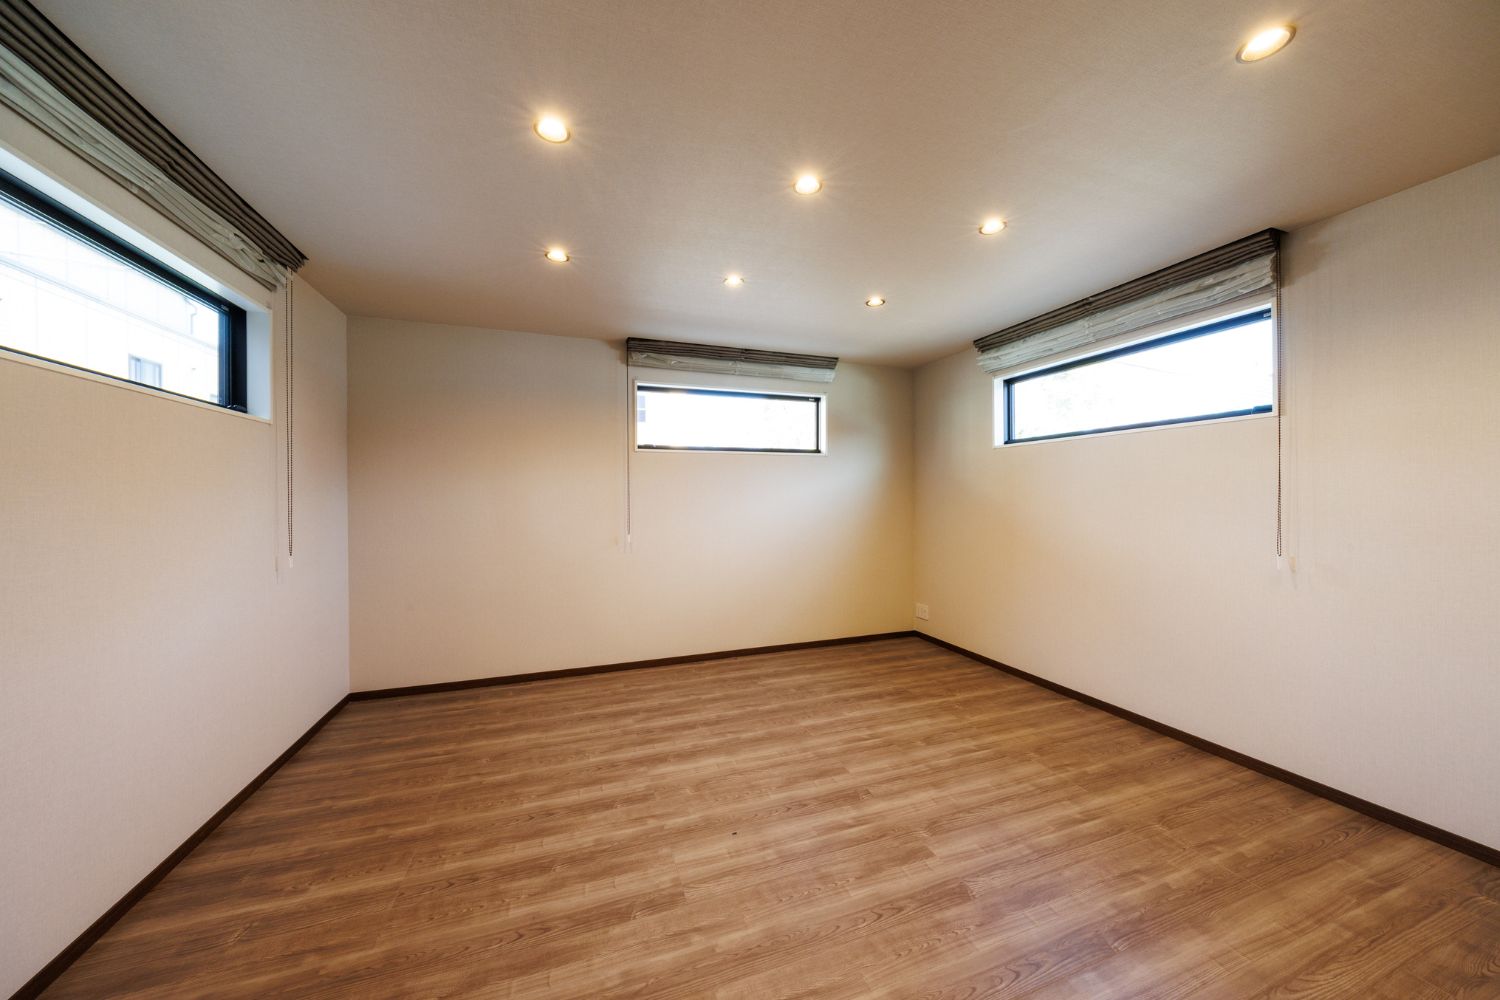 T-1／3面の小窓から自然光がたっぷり入り明るく開放感のある空間に。部屋全体を照らし安心できる空間を提供します。